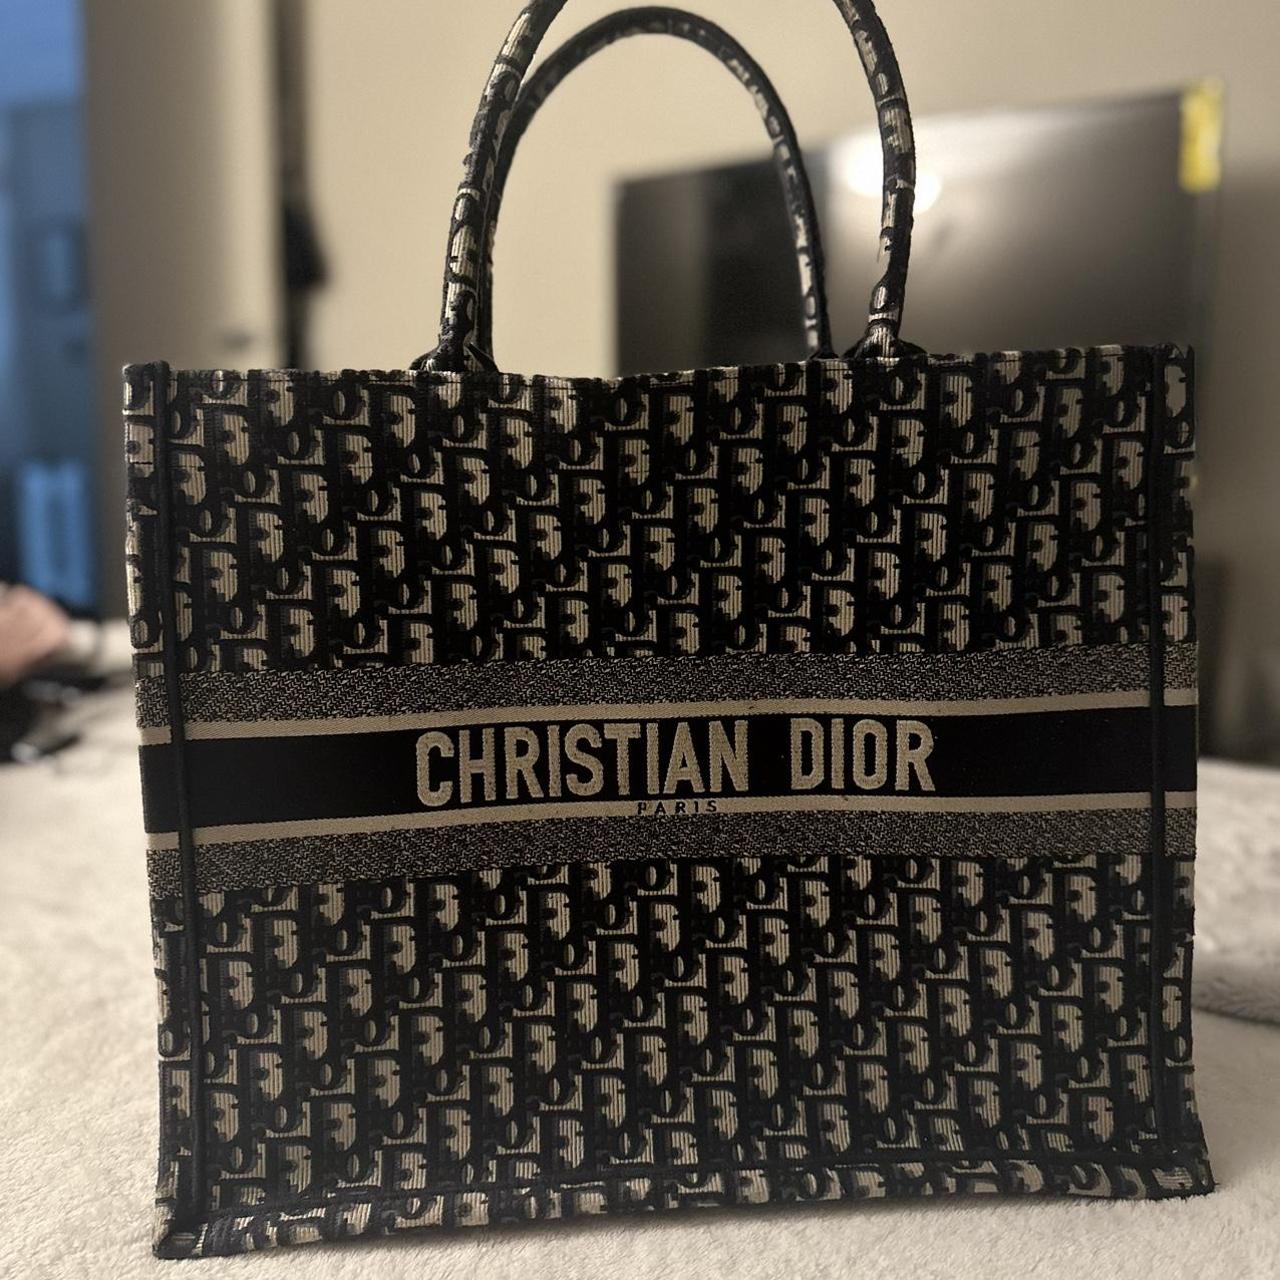 Dior handbag - Depop